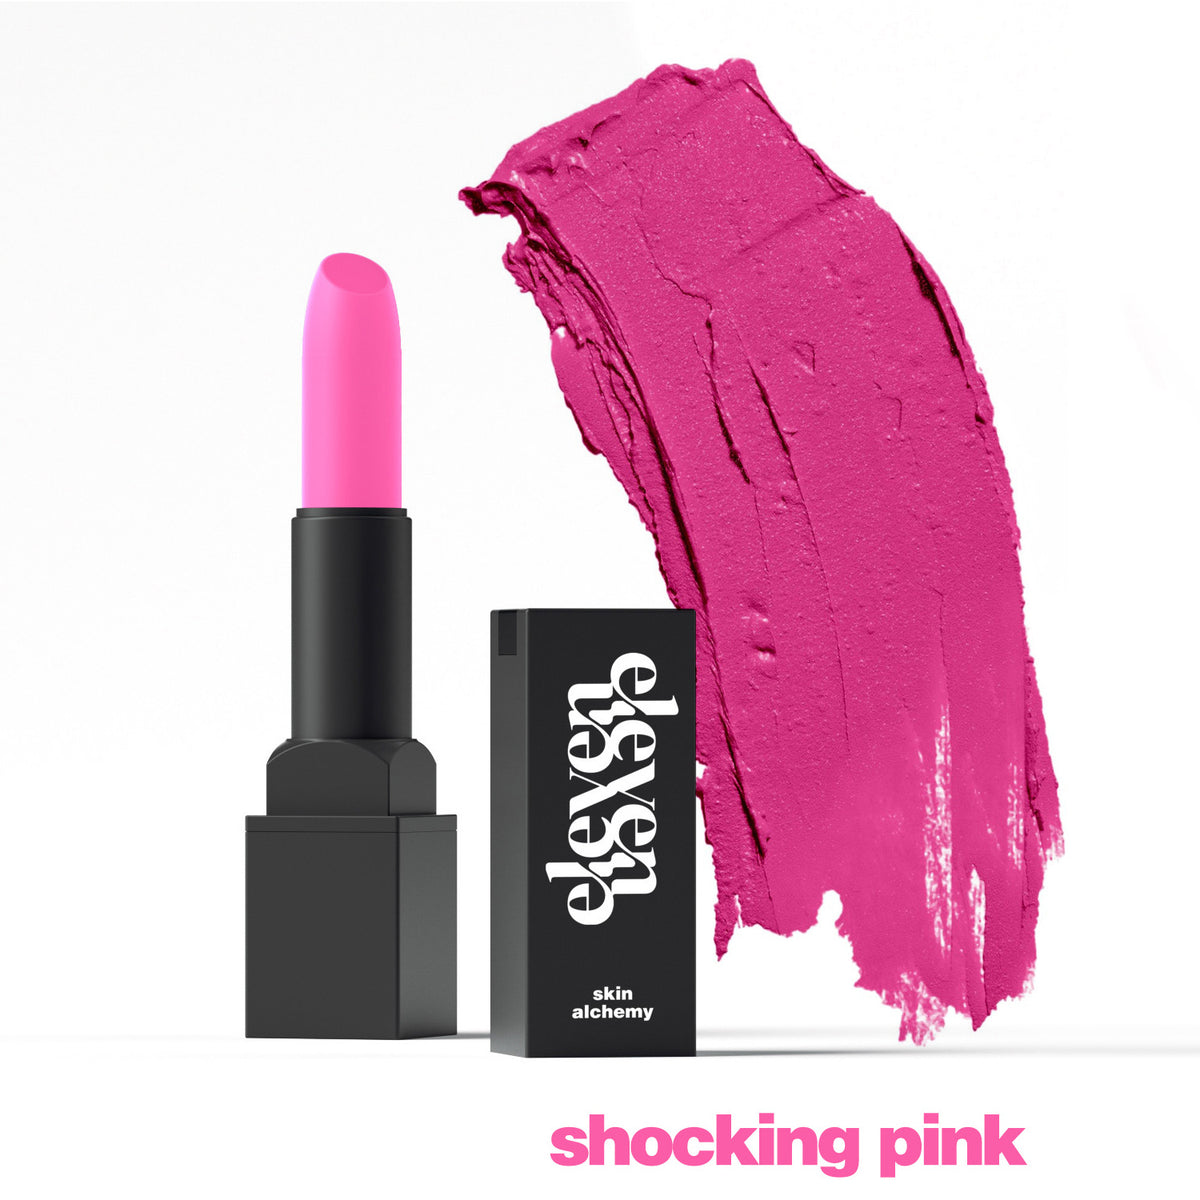 Shocking Pink